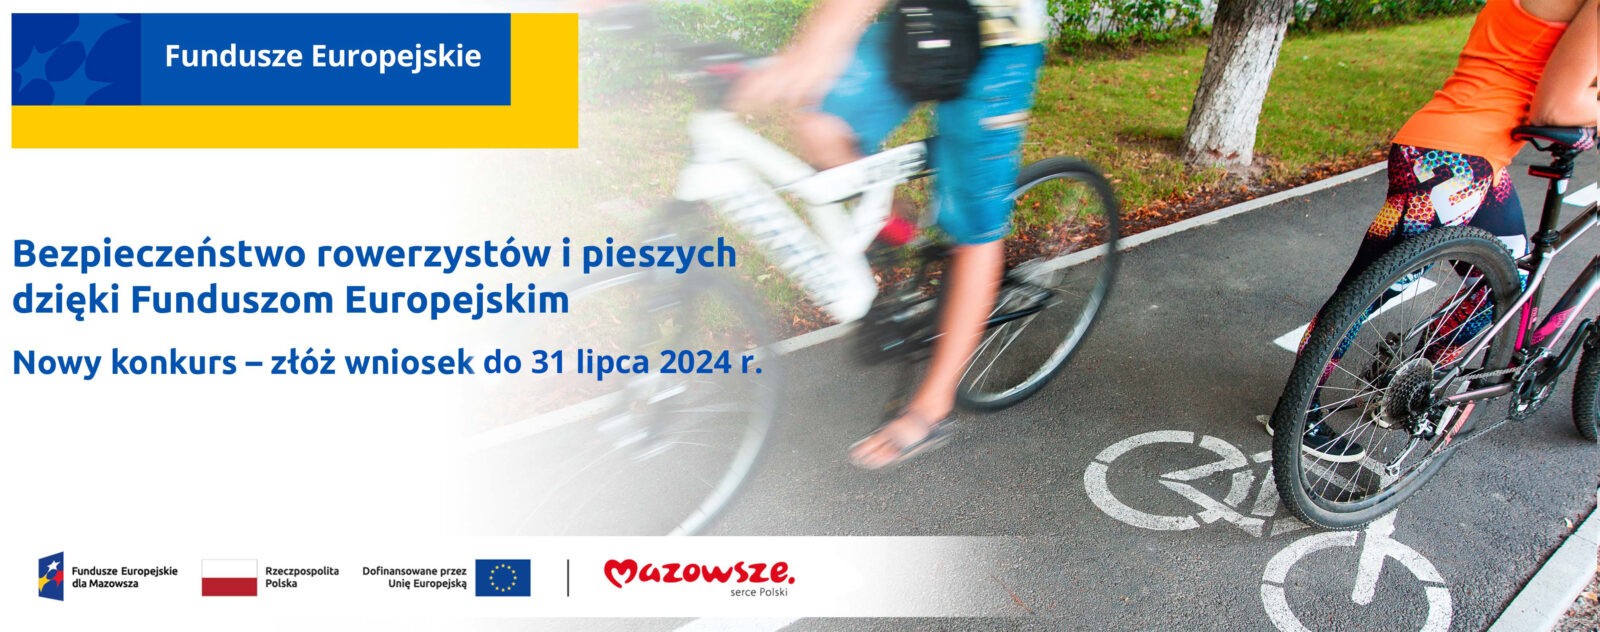 grafika przedstawia napis: Bezpieczeństwo rowerzystów i pieszych dzięki Funduszom Europejskim. Nowy konkurs - złóż wniosek do 31 lipca 2024 r. Na zdjęciu widać rowerzystów jadących po ścieżce rowerowej